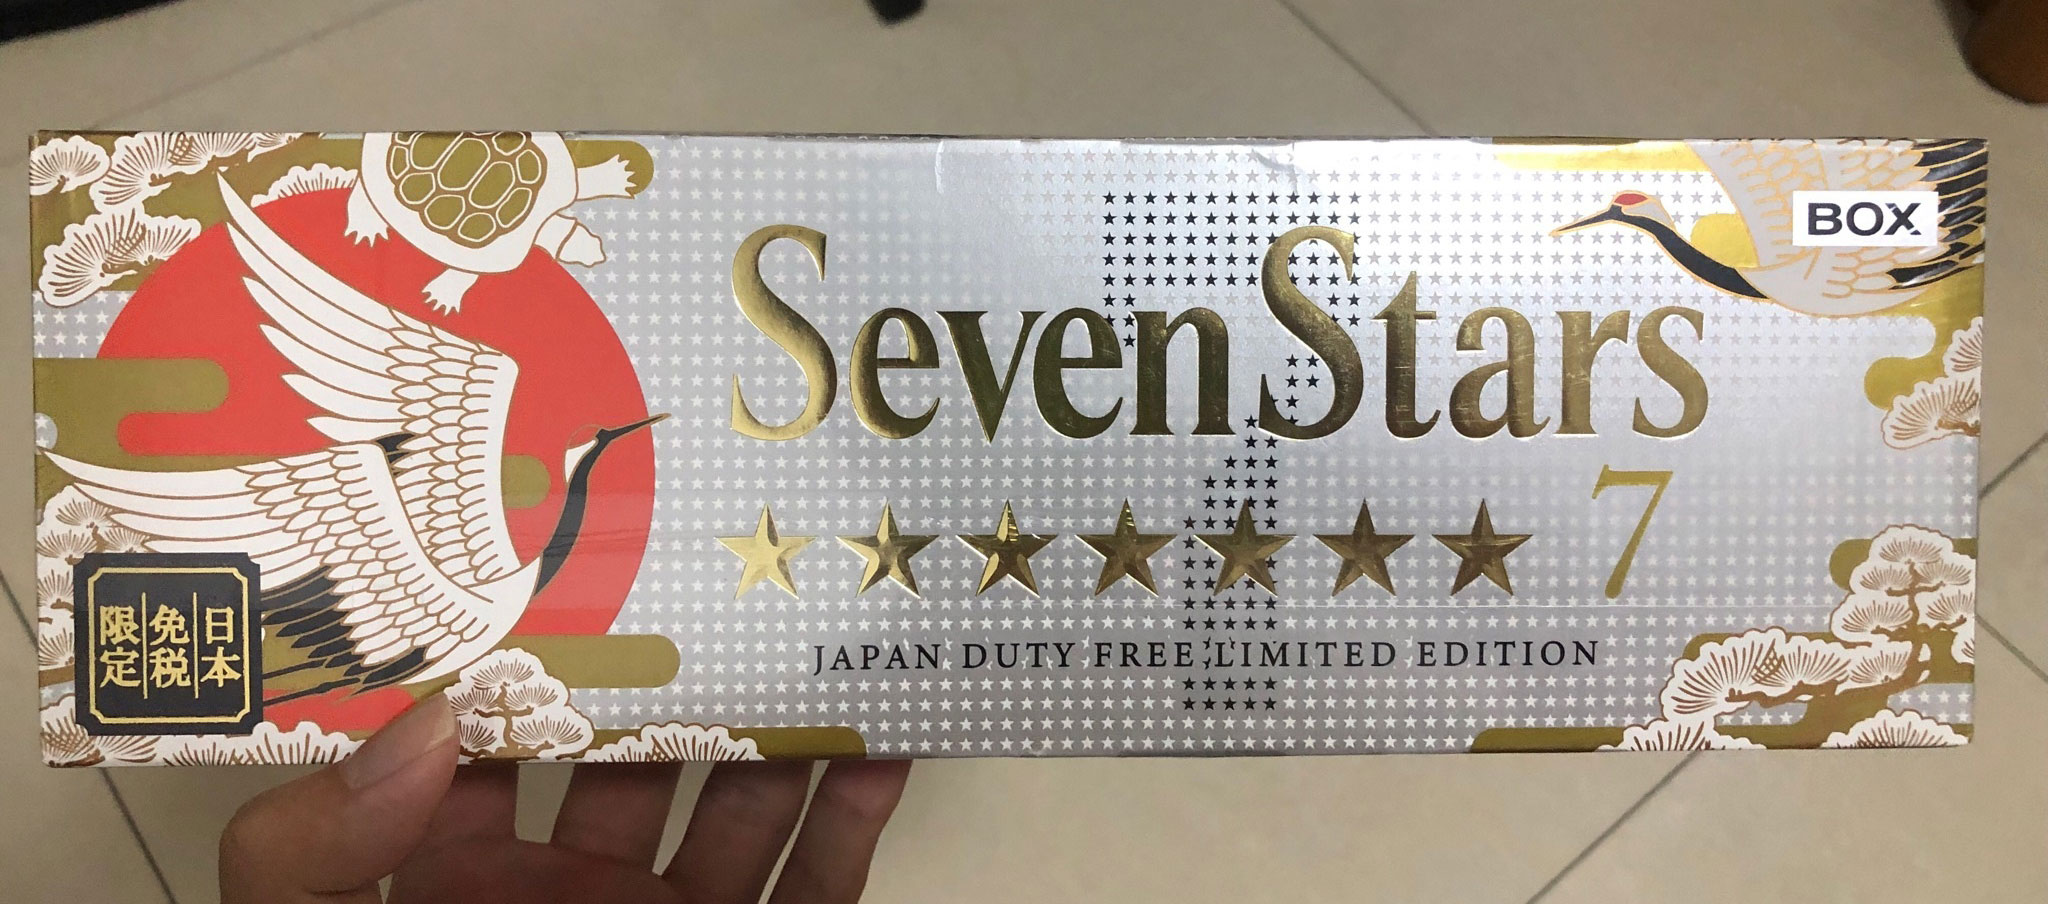 日产七星烟 seven stars